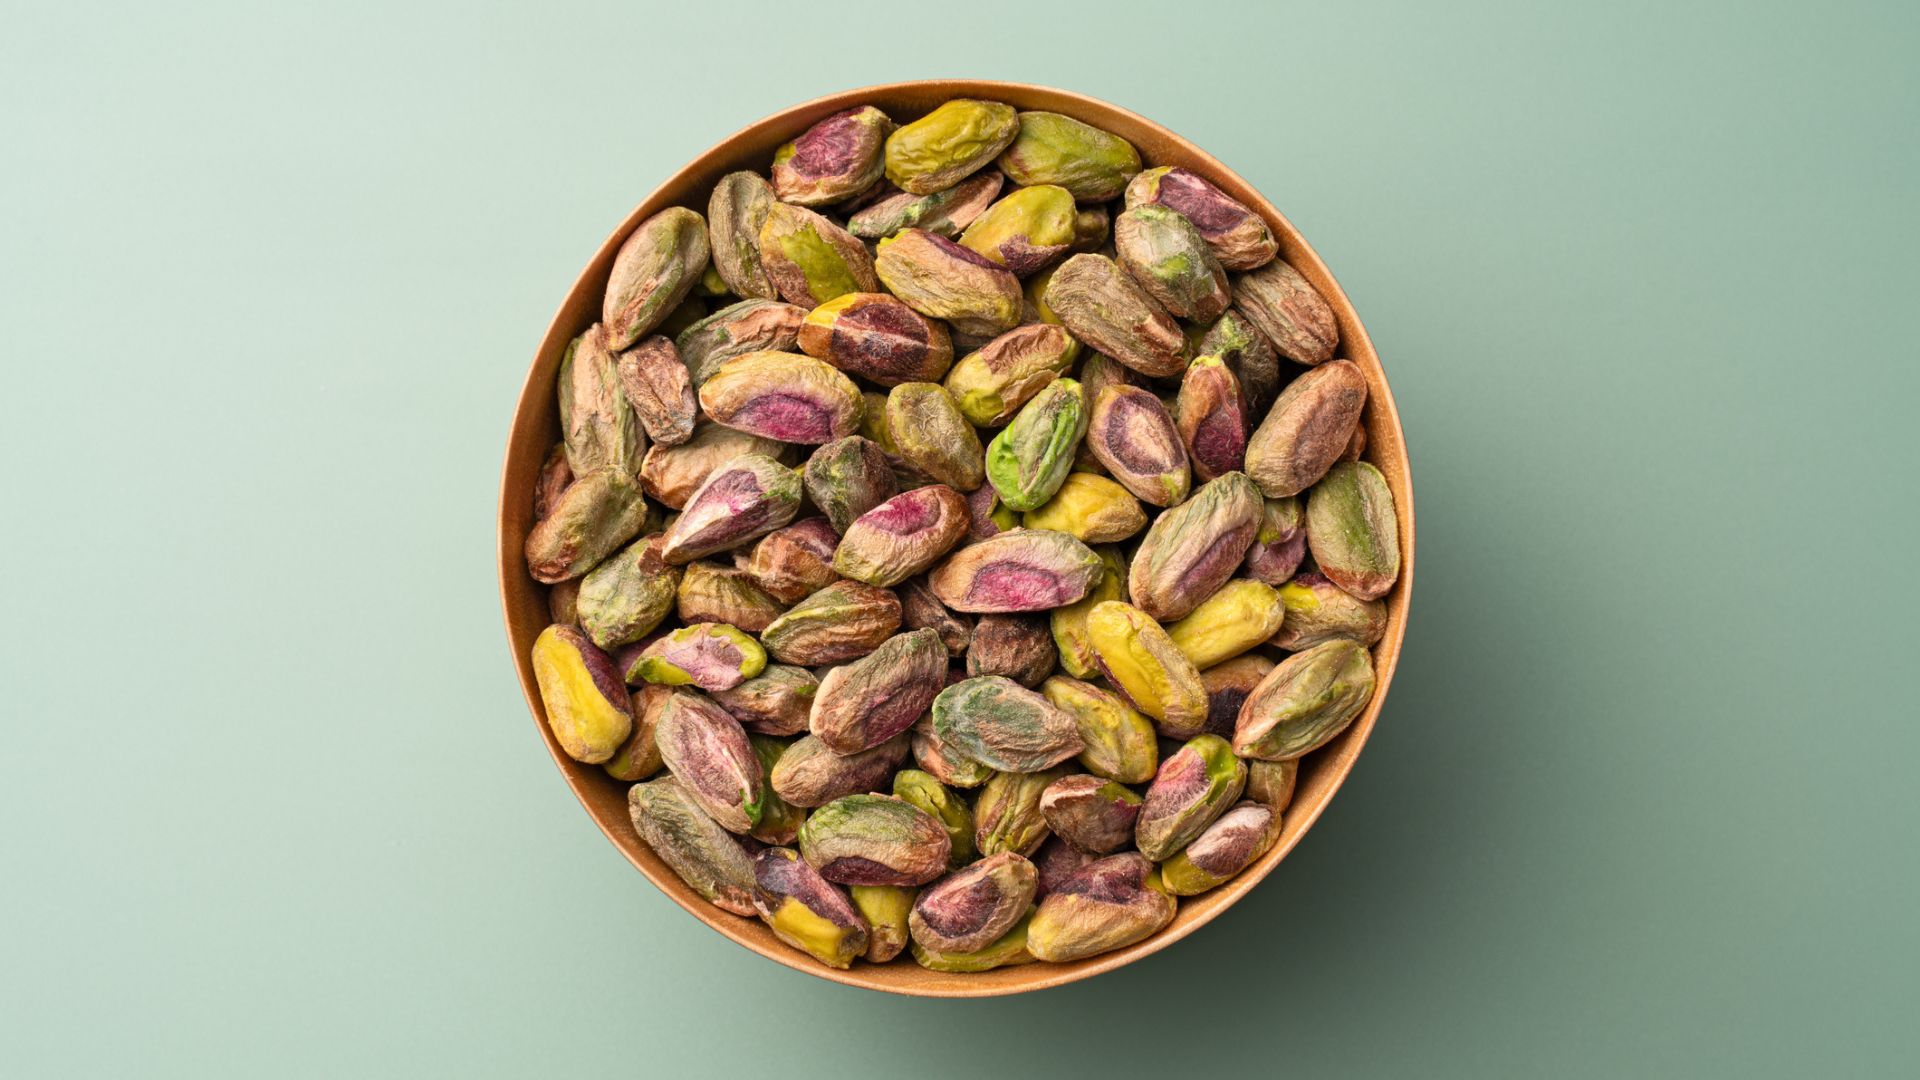 Bowl of pistachios